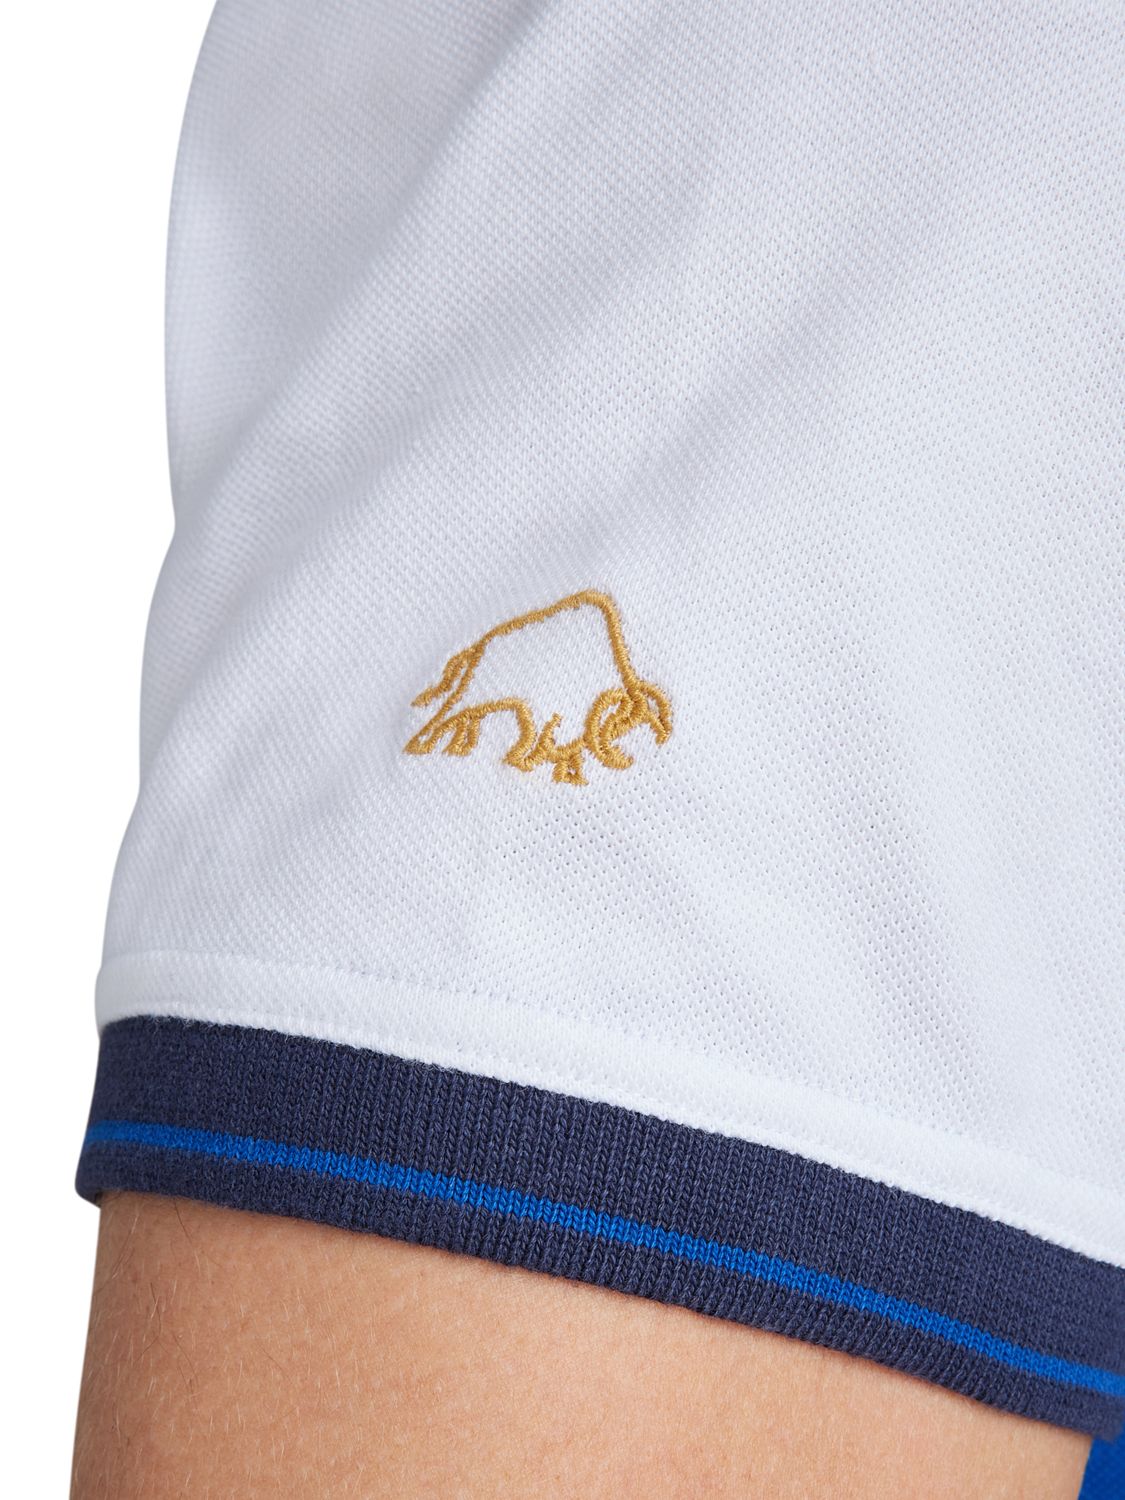 Raging Bull Diagonal Cut & Sew Pique Polo Shirt, Blue/Multi, XXXXXXL